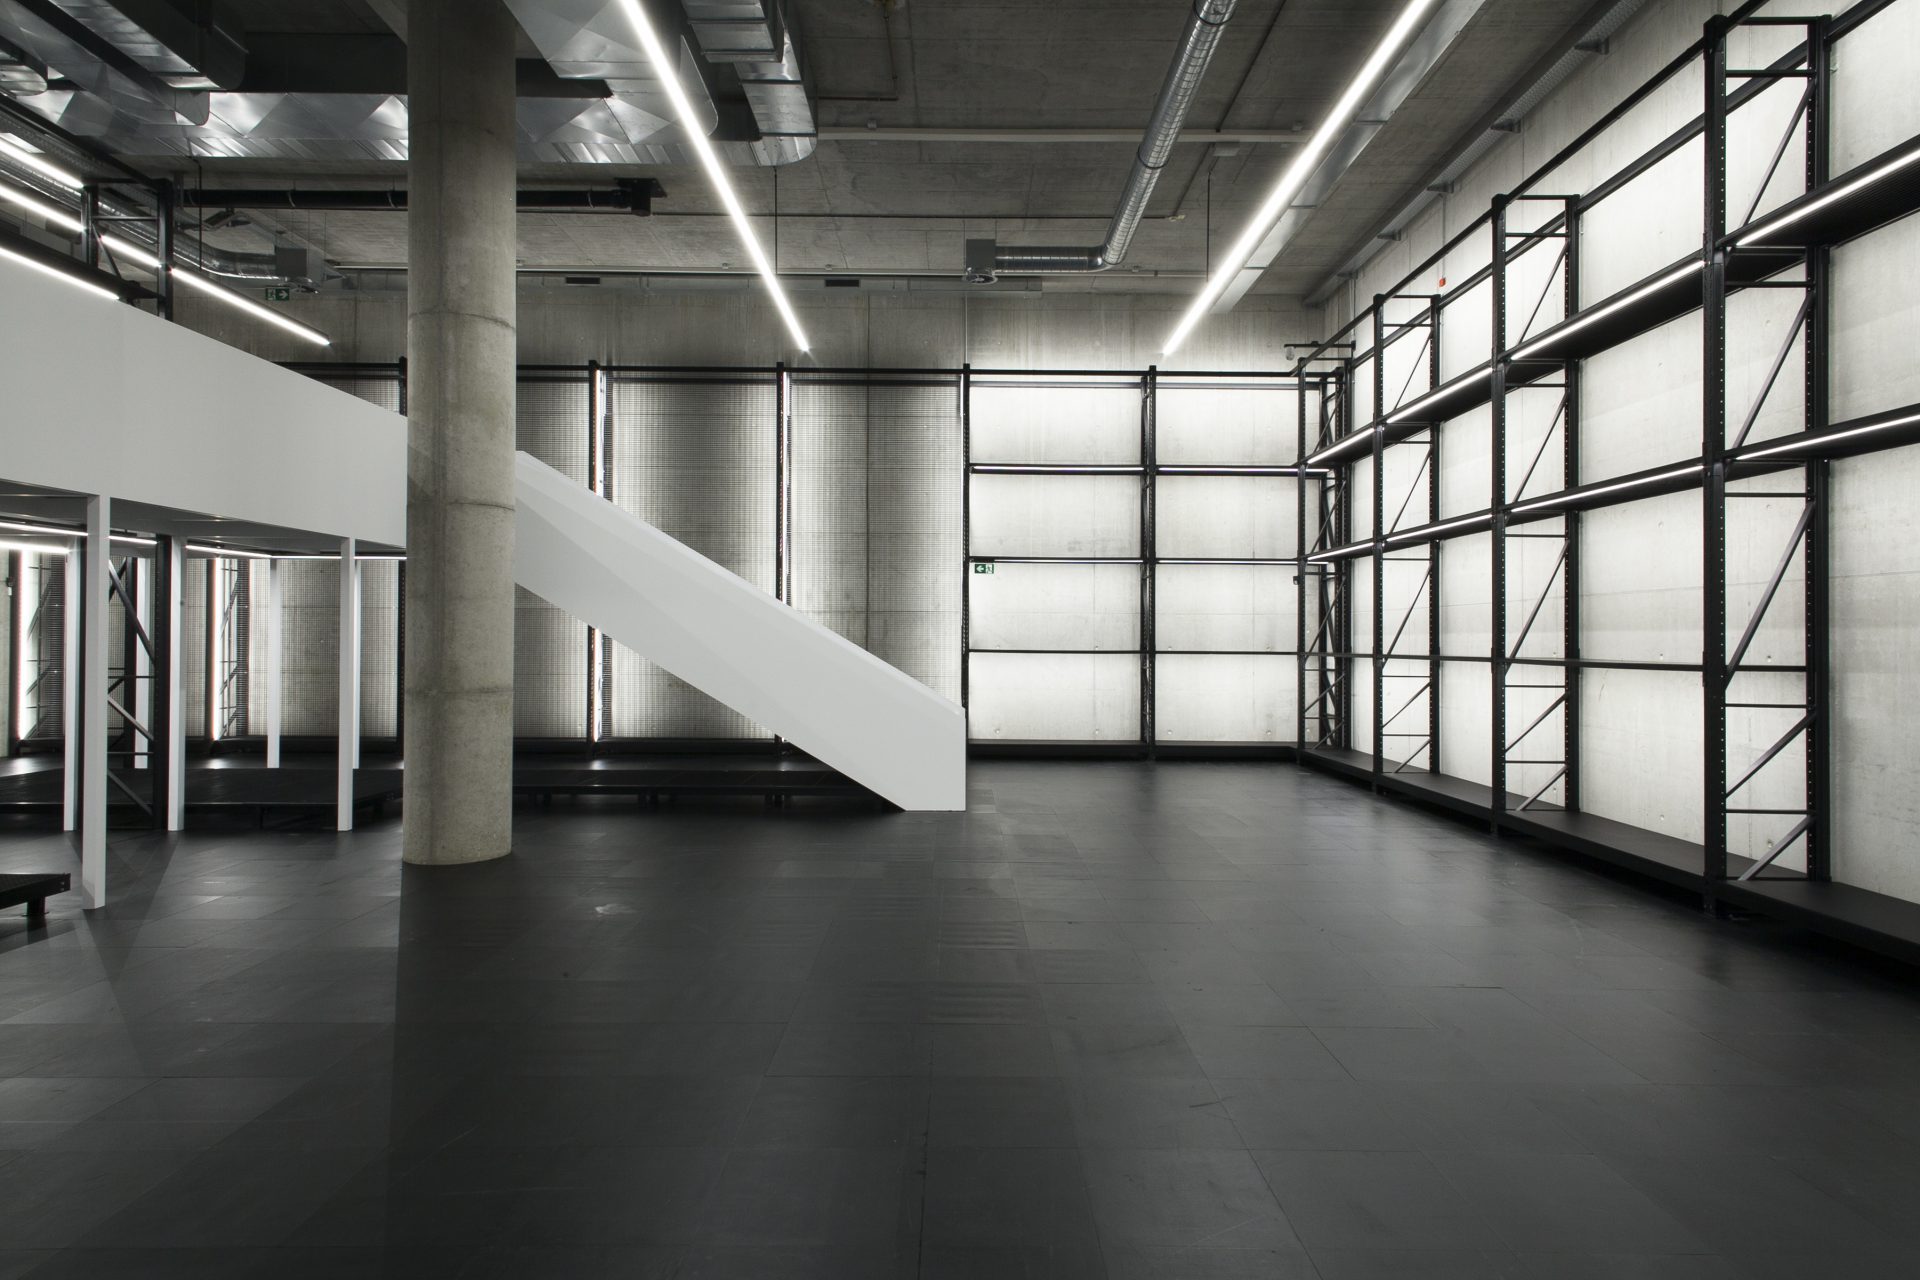 Blick in den leeren Ausstellungsraum. Das X-D-E-P-O-T ist ein großer, hoher Raum mit schwarzen Regalen, die bis zur Decke gehen. Die Regale sind beleuchtet. DIe Wände sind aus grauem Beton, der Boden Schwarz. Links sieht man eine Säule und eine weiße Treppe von einem Steg kommend.